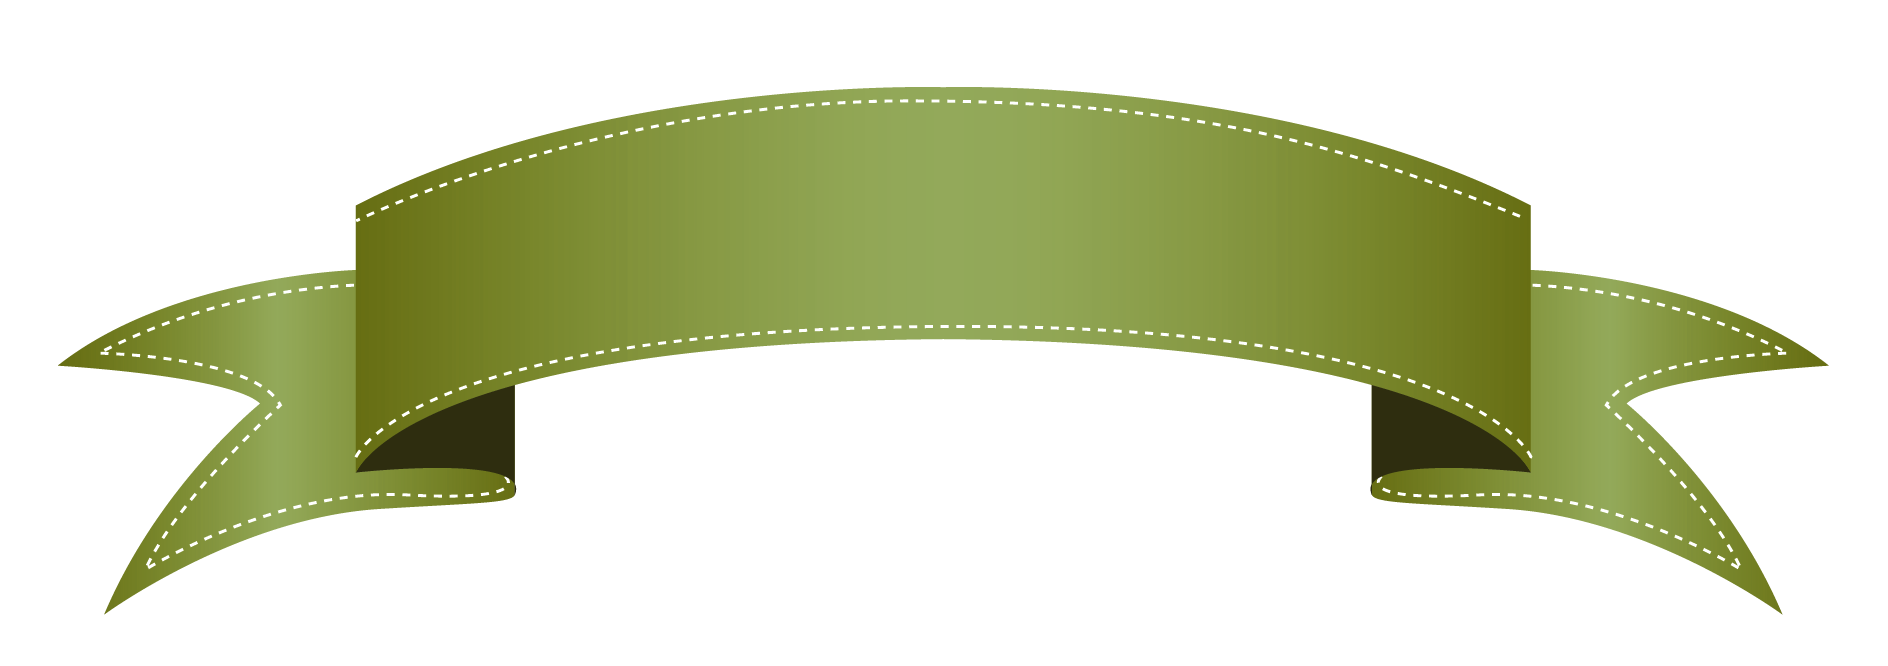 Gambar Transparan spanduk hijau